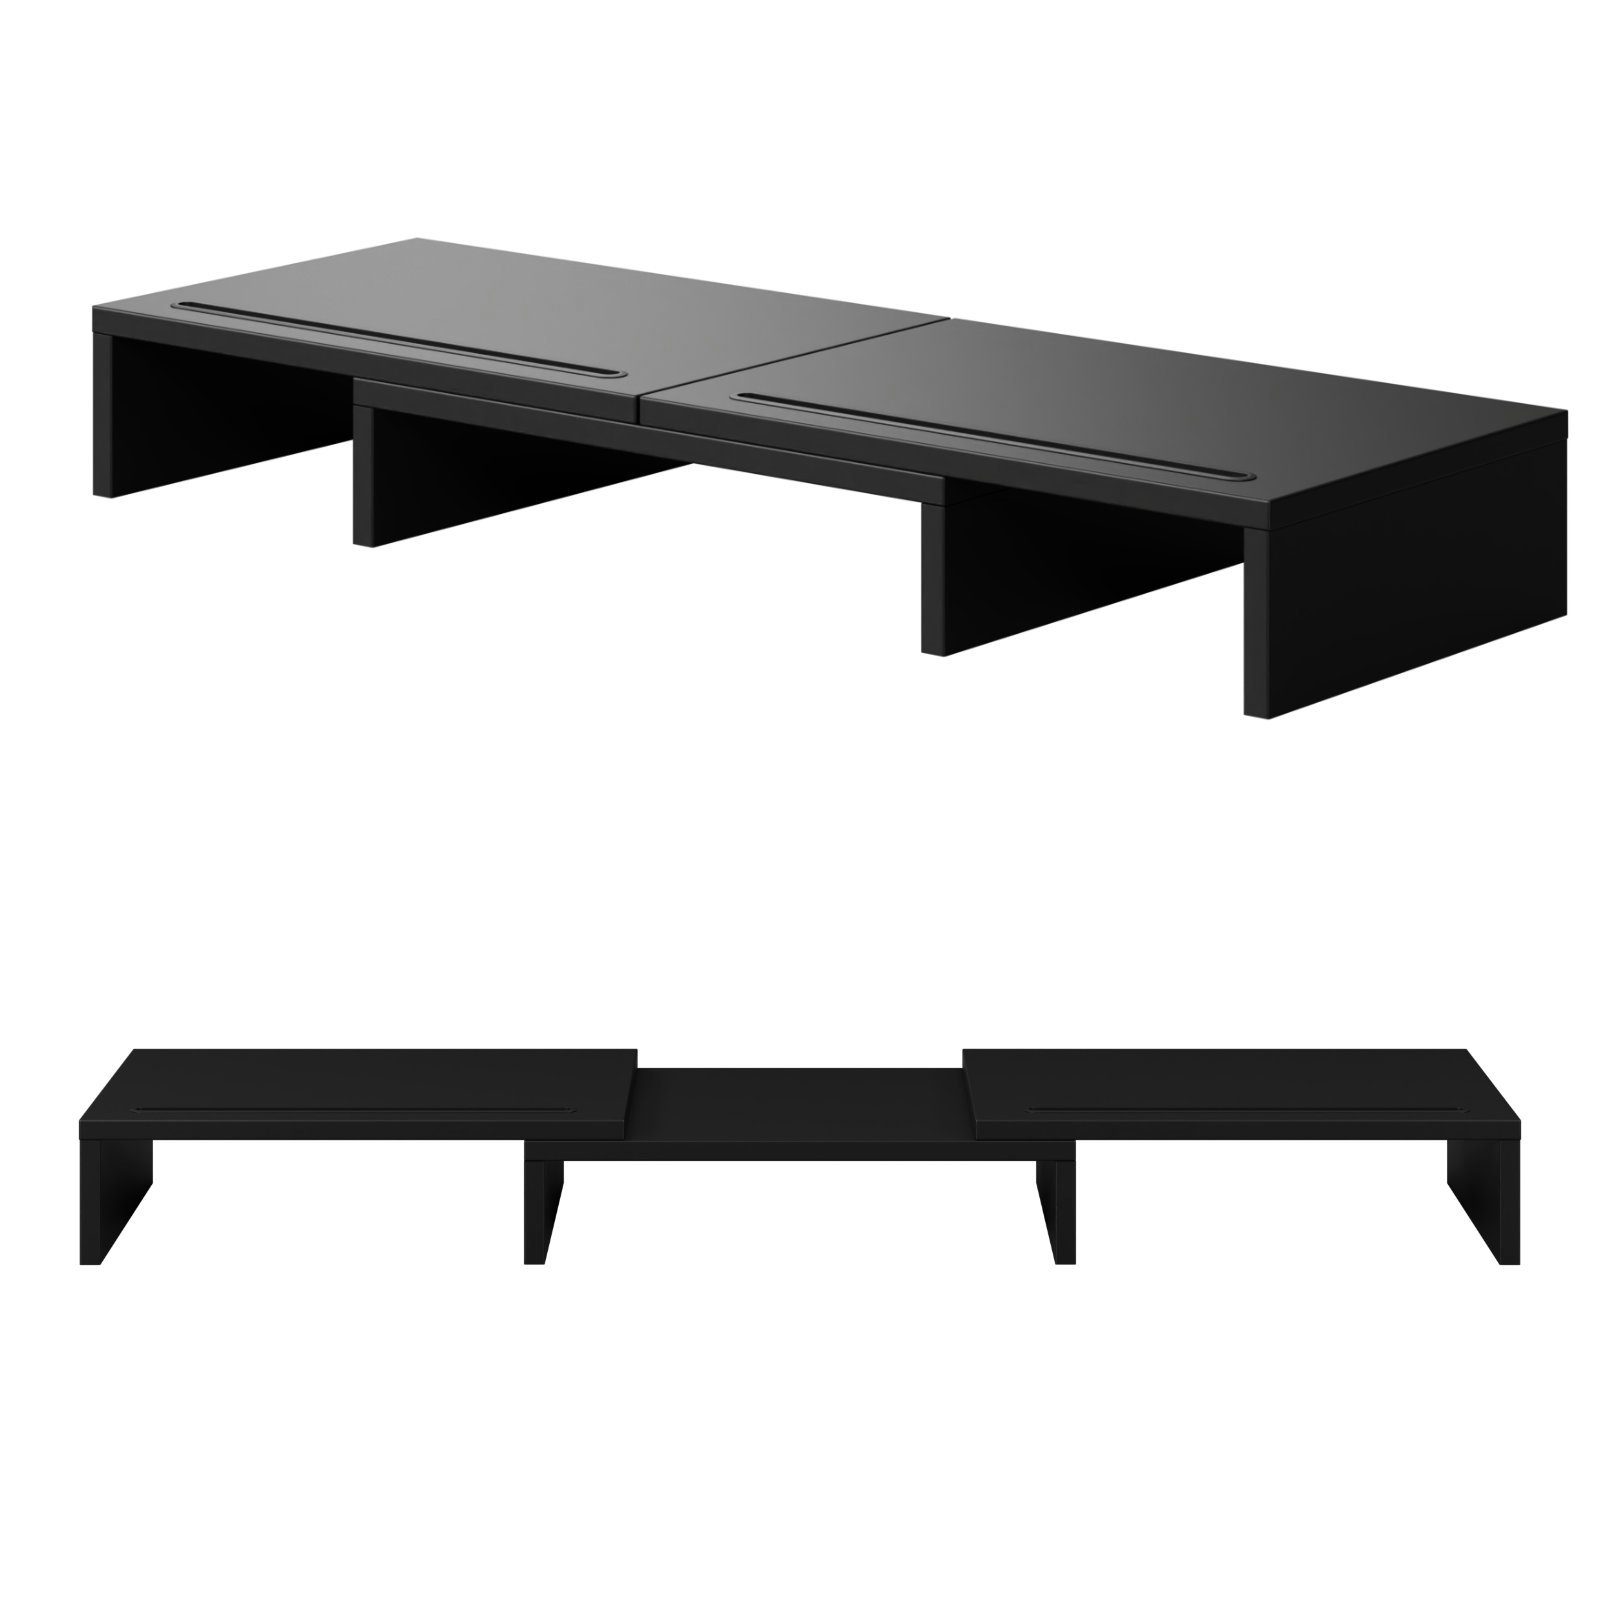 Unterbau Schreibtischaufsatz drehbar HAGO Auflage schwarz 3-tlg. Monitorständer Set Tischhalterung